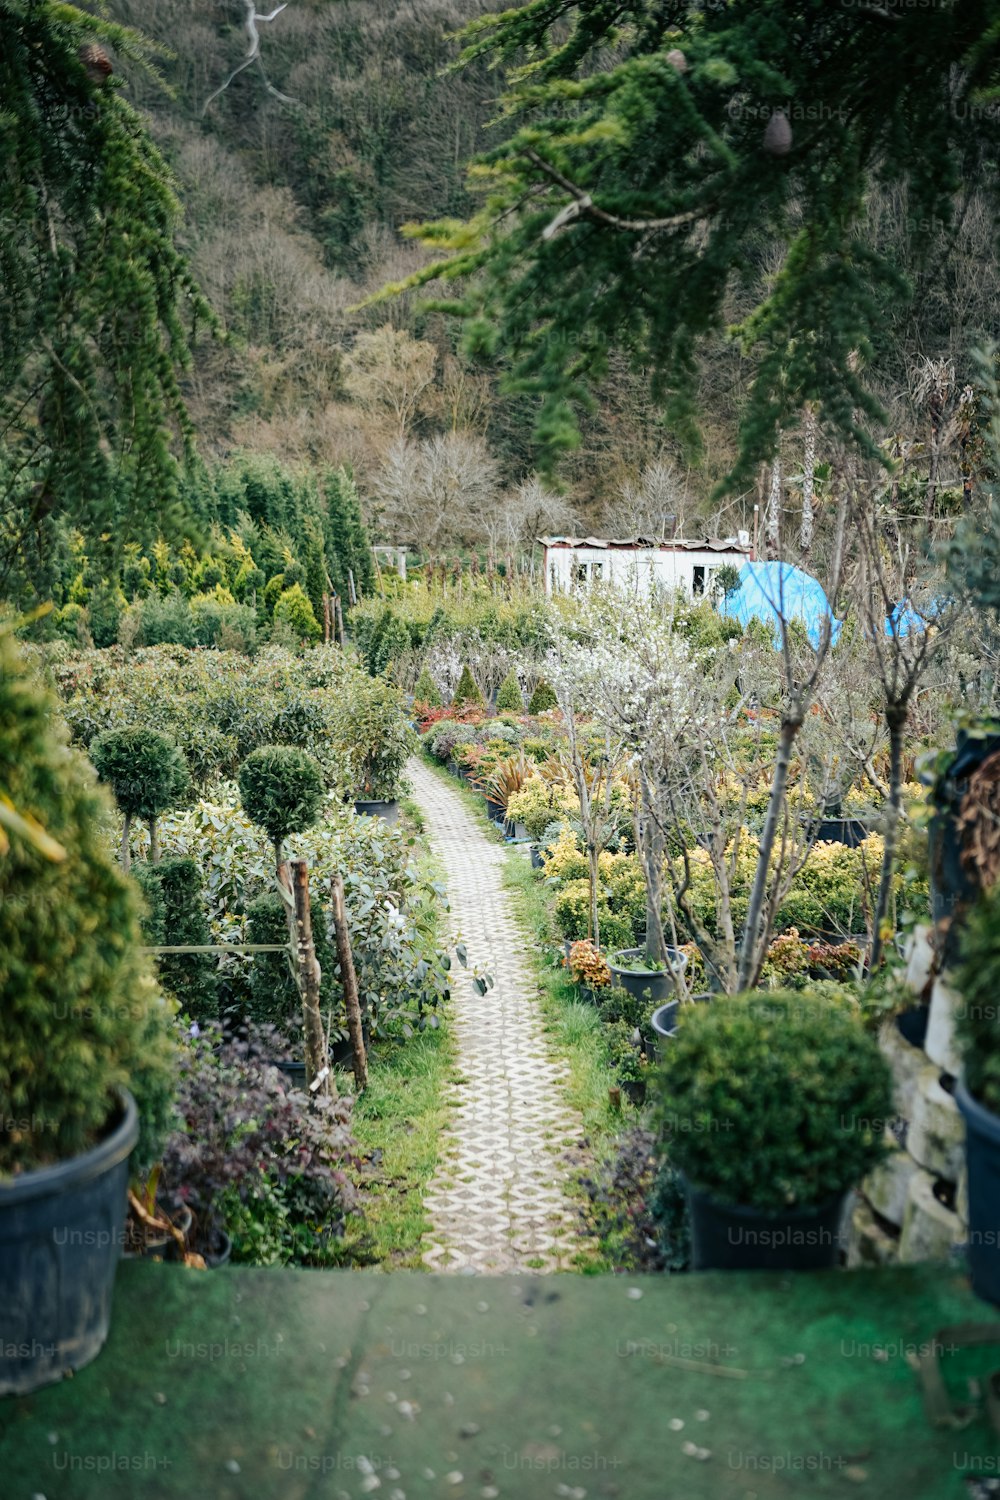 Un chemin à travers un jardin rempli de plantes